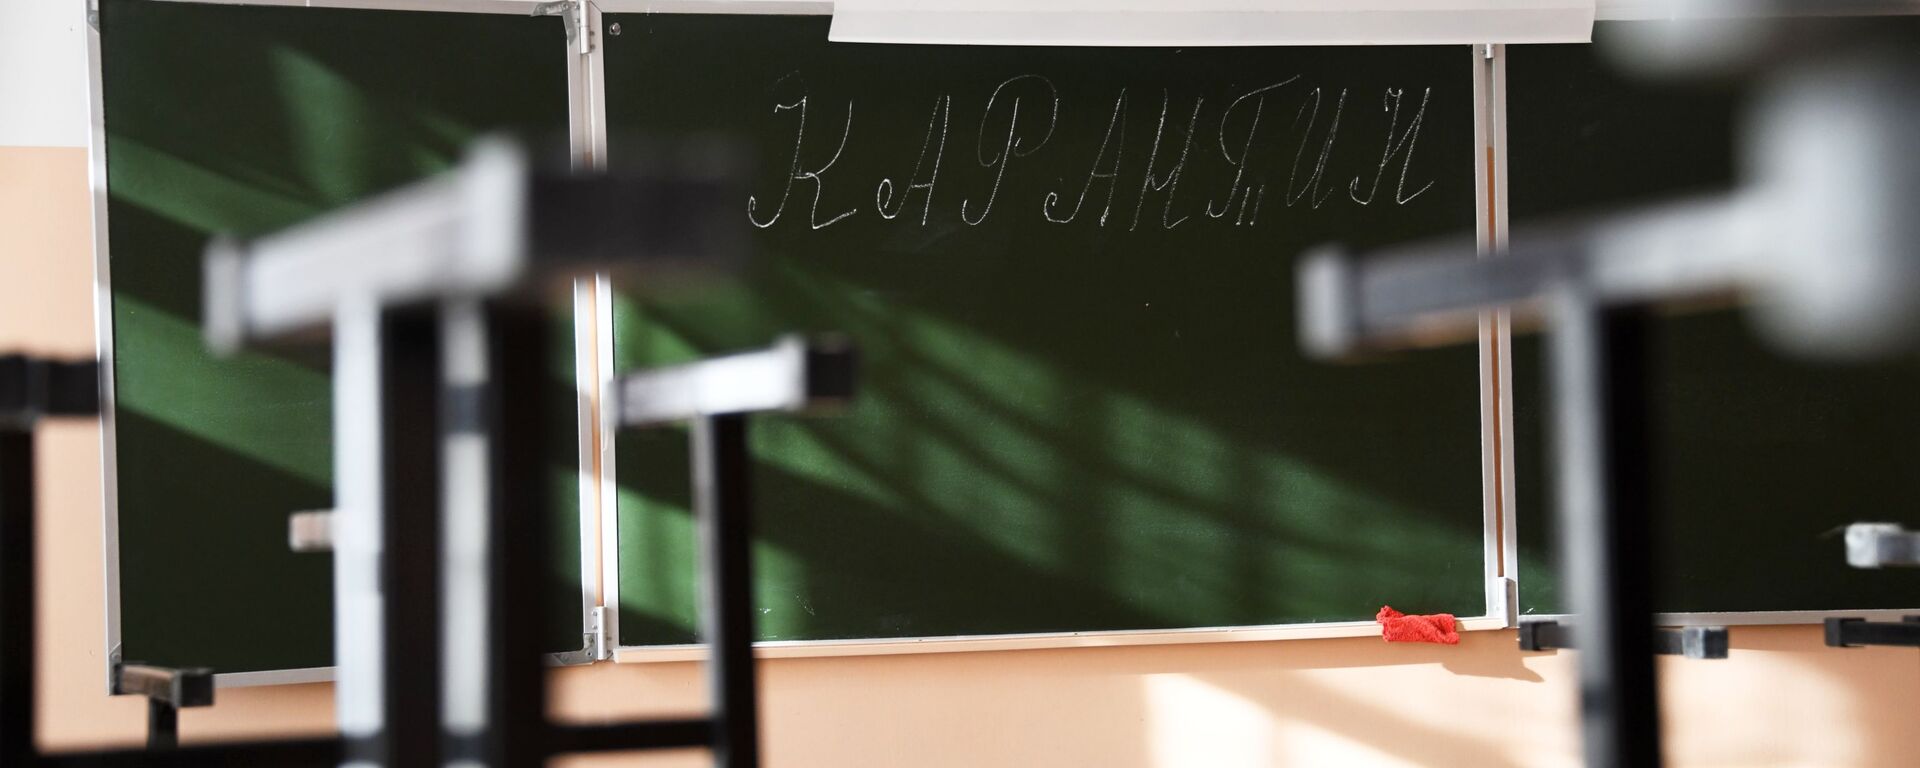 В школах Забайкалья прекращены занятия после выявления в регионе коронавируса - Sputnik Абхазия, 1920, 06.04.2021